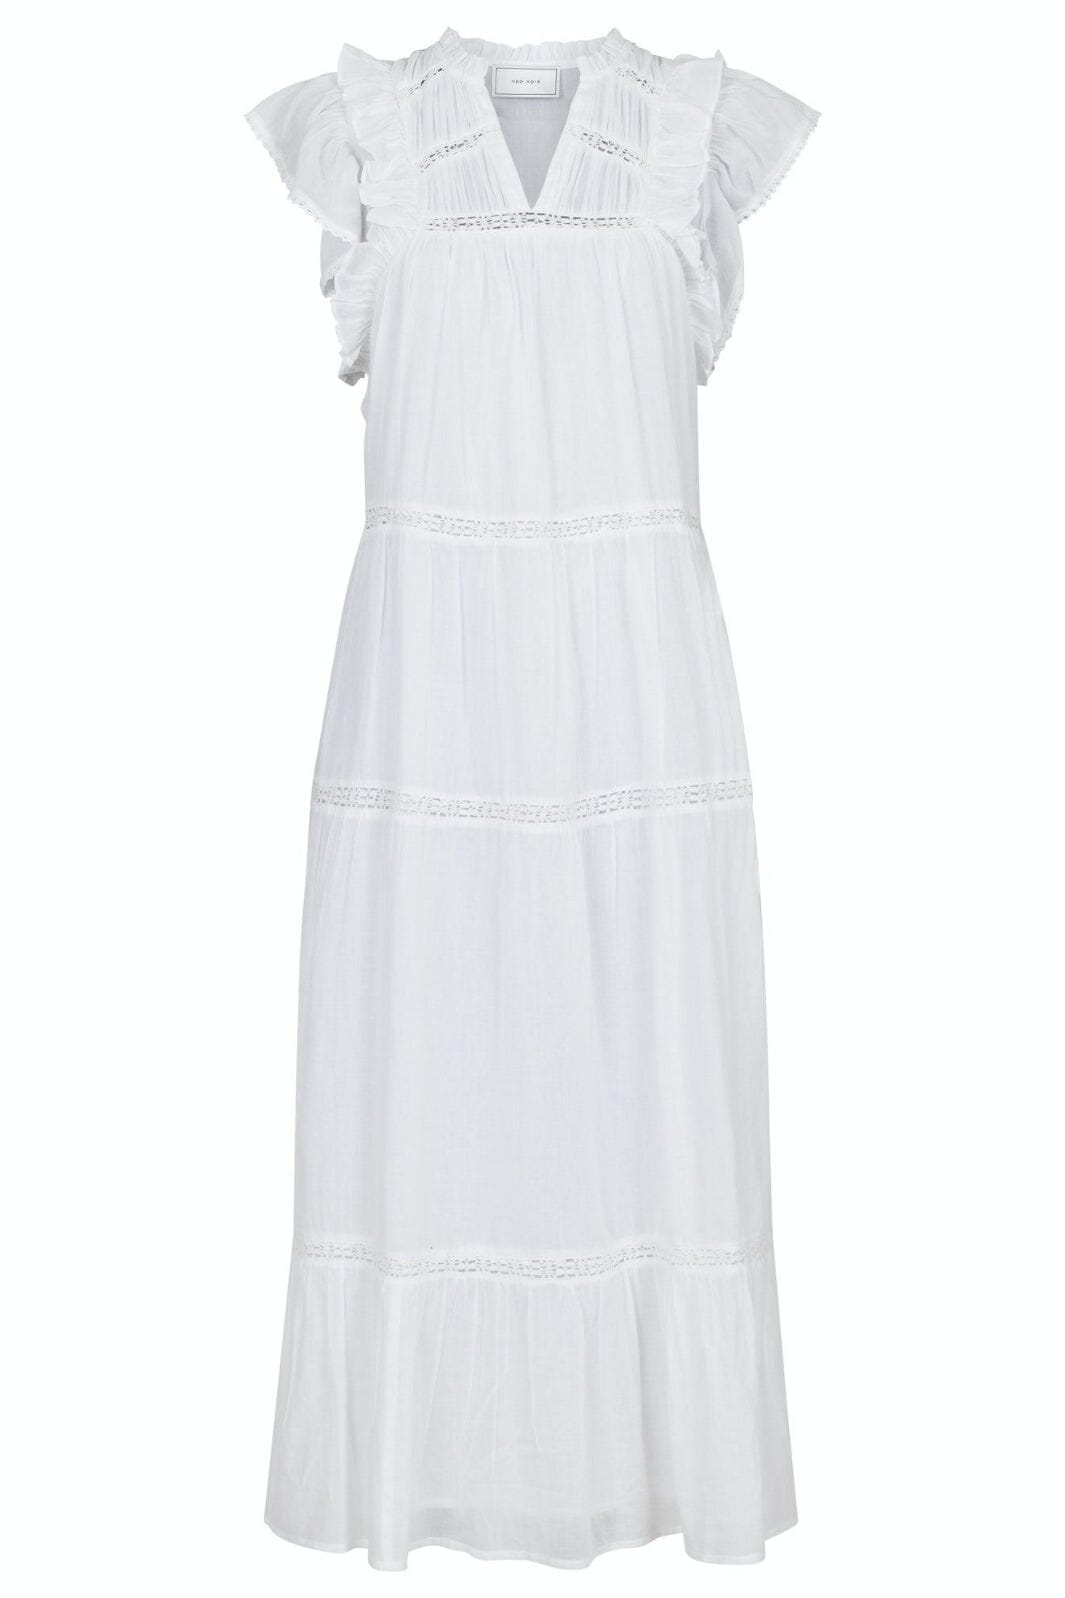 Neo Noir - Ankita S Voile Dress - White Kjoler 